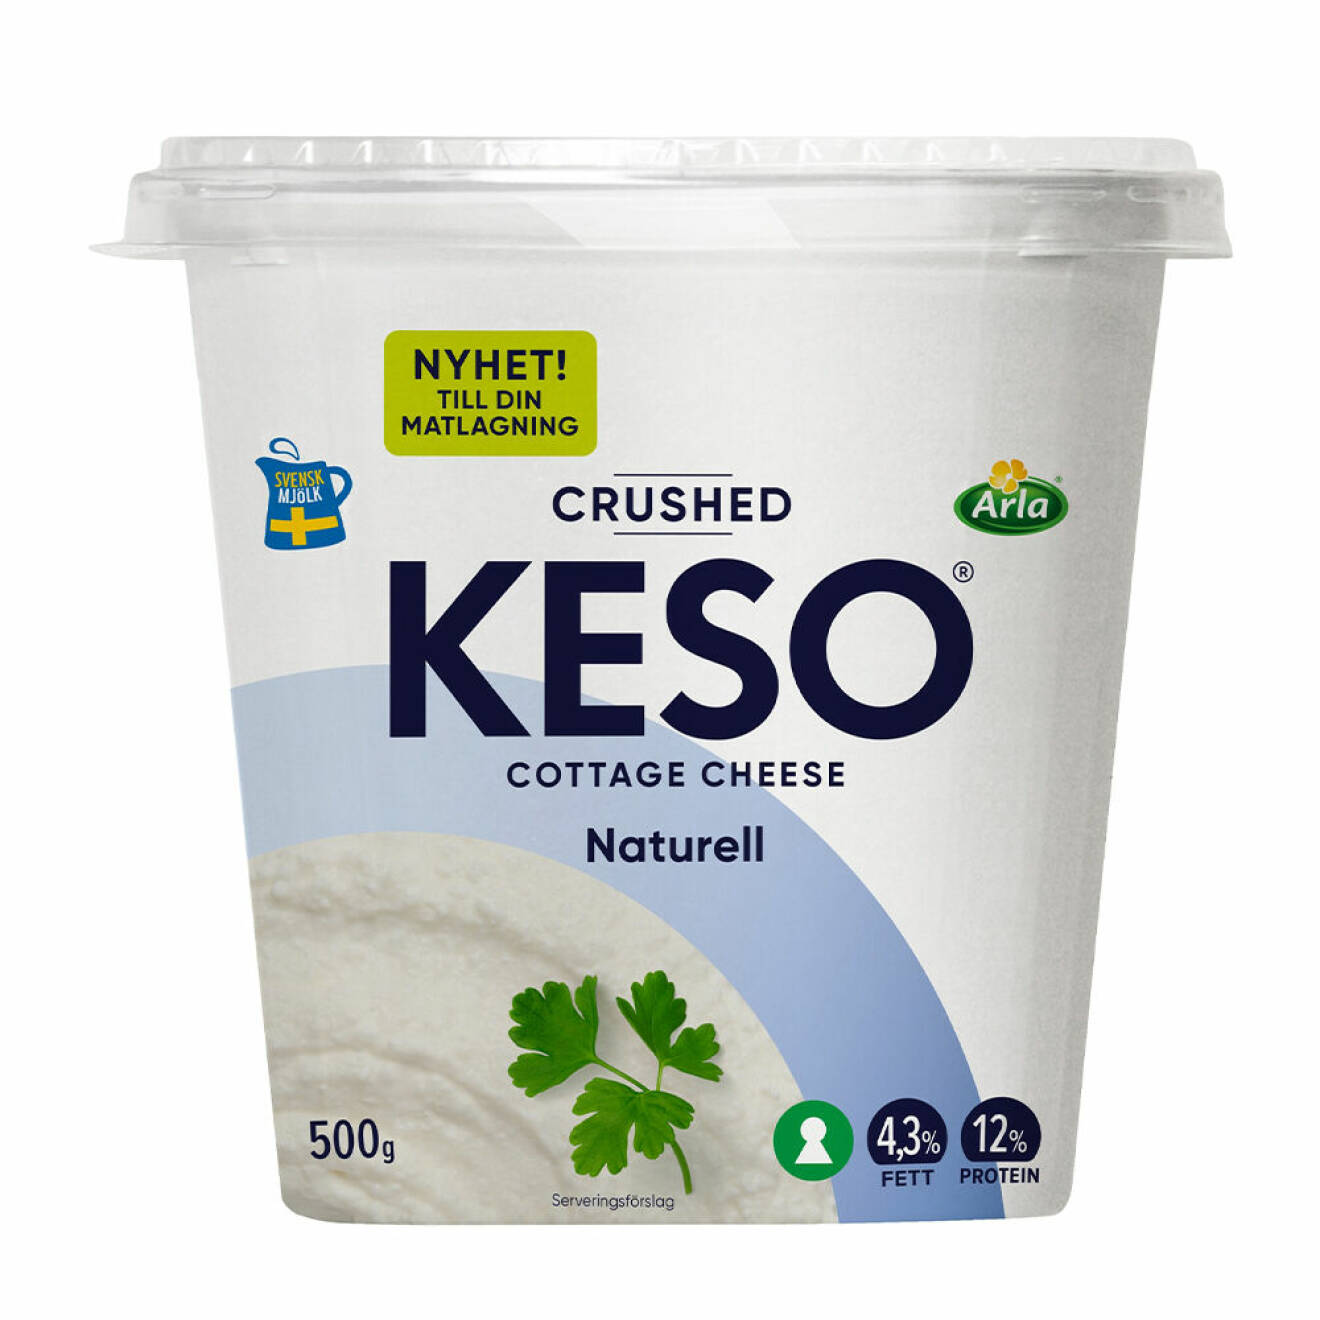 Nya Keso Crushed finns i butik från vecka 36, 2023.